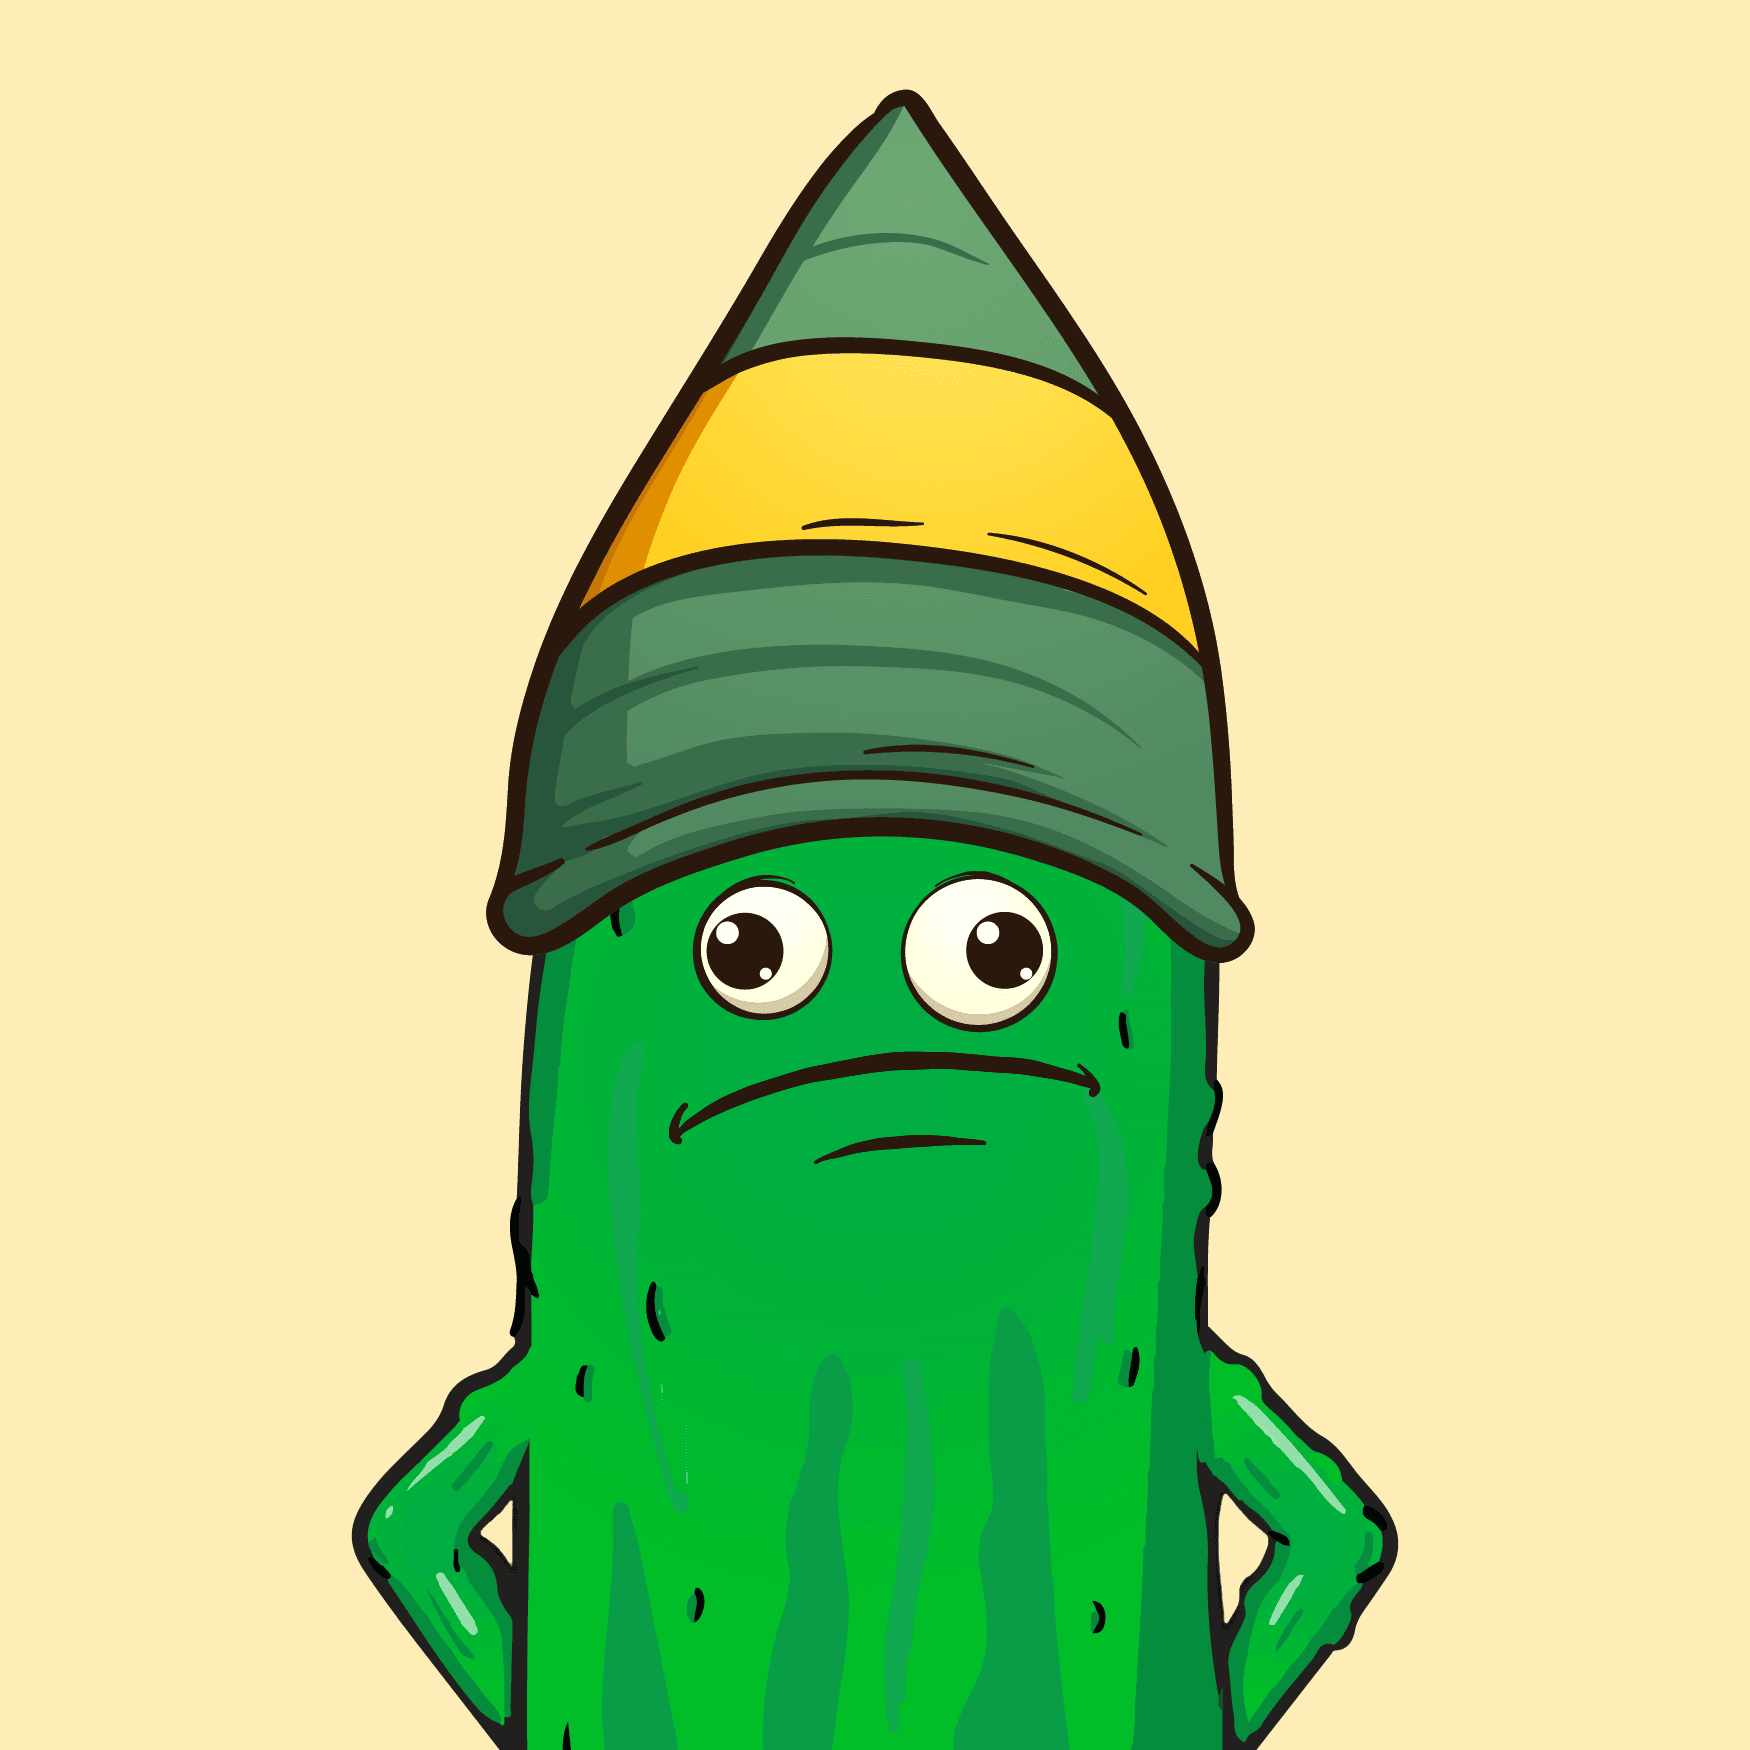 Master cucumber #12